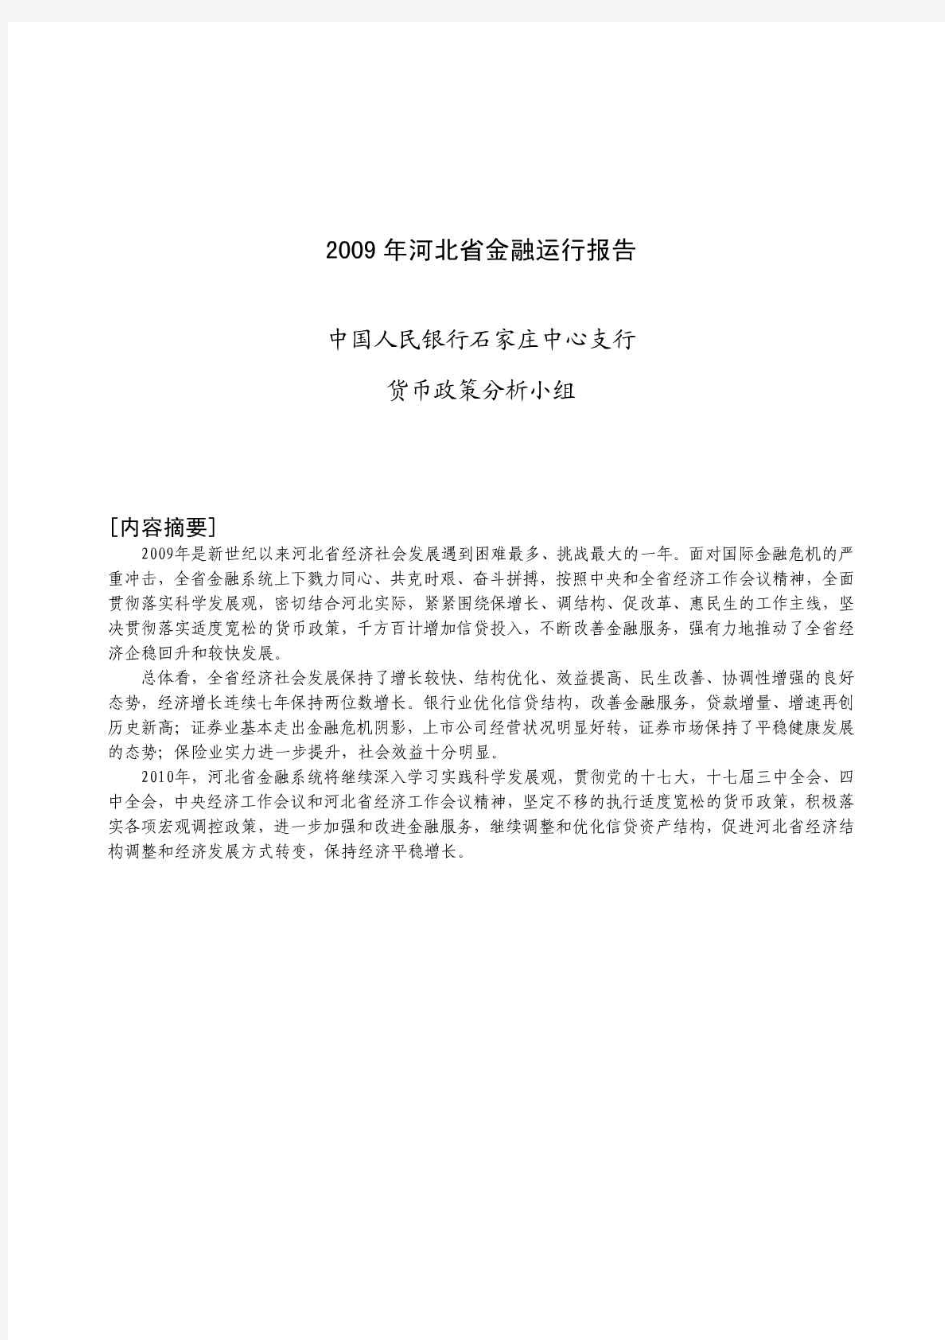 2010年河北省金融运行报告